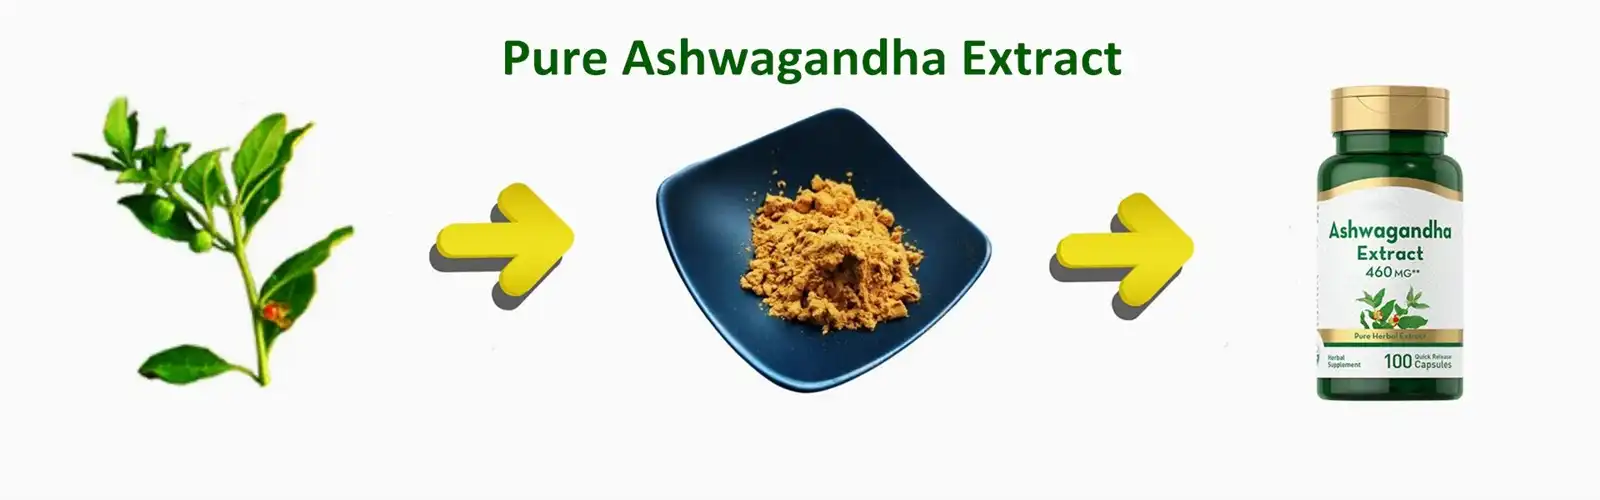 Pure Ashwagandha Extract